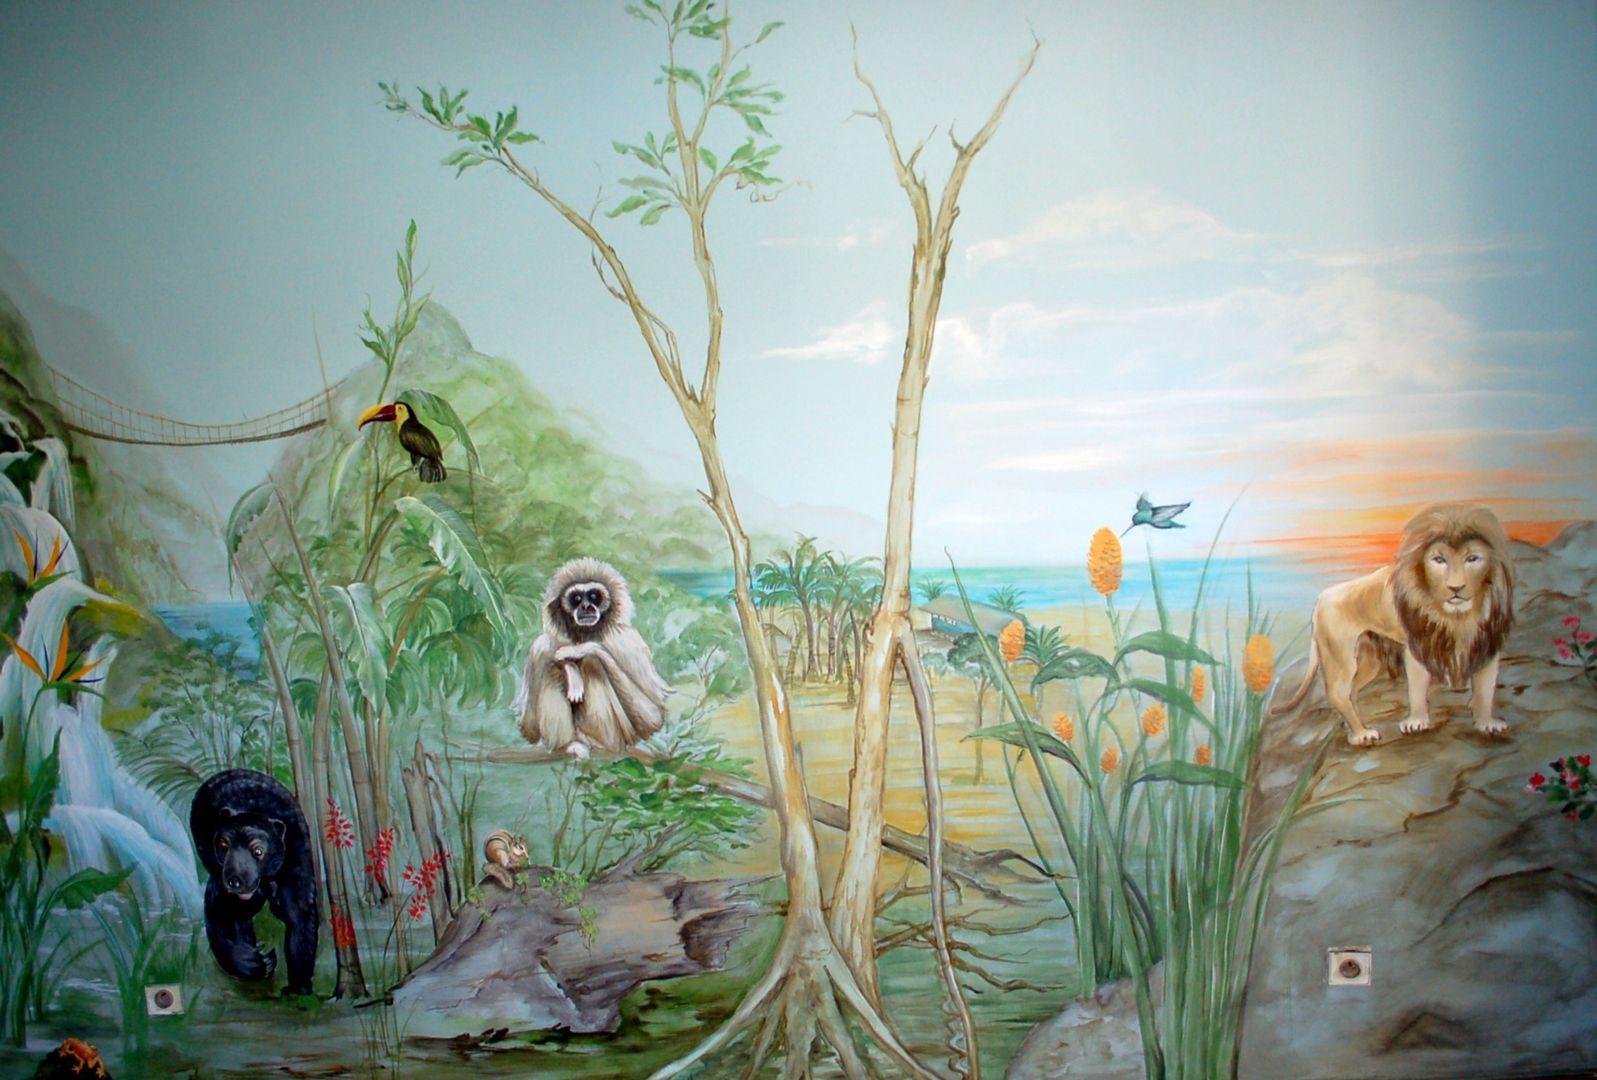 Dschungel - Kinderzimmer, Wandmalerei & Oberflächenveredelungen Wandmalerei & Oberflächenveredelungen Eclectic style nursery/kids room